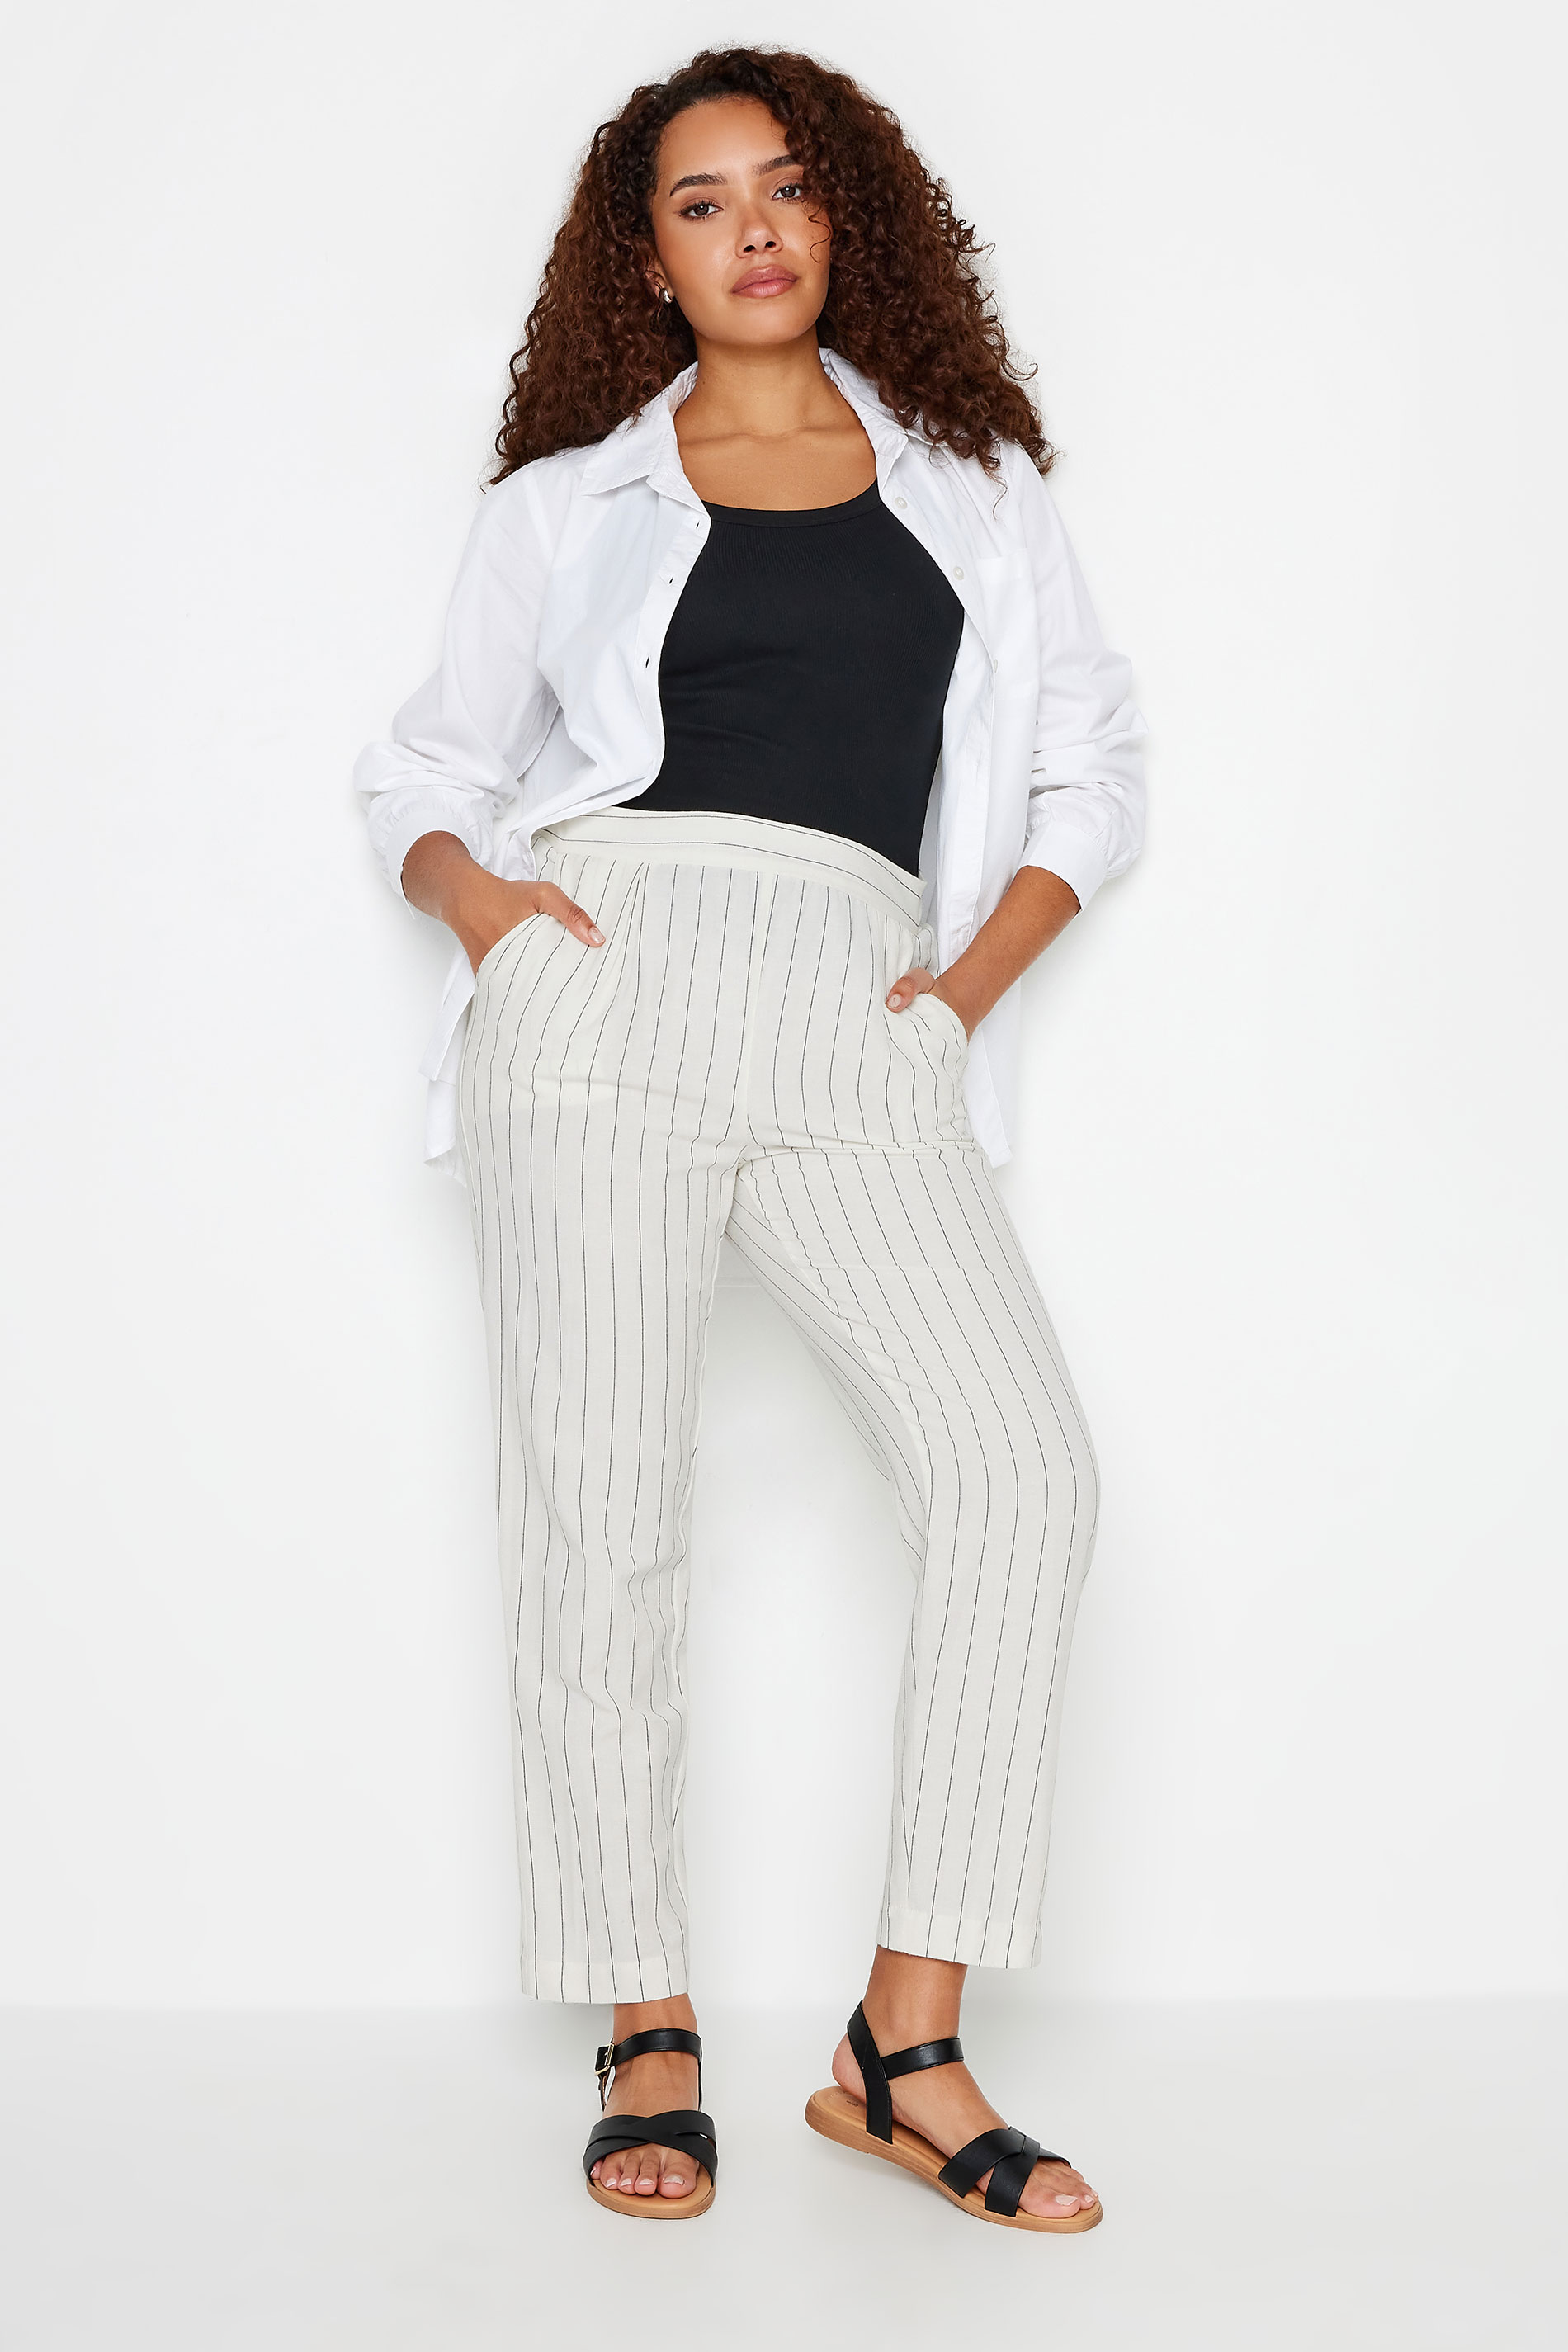 M&Co Ivory White Stripe Print Linen Trousers | M&Co 2